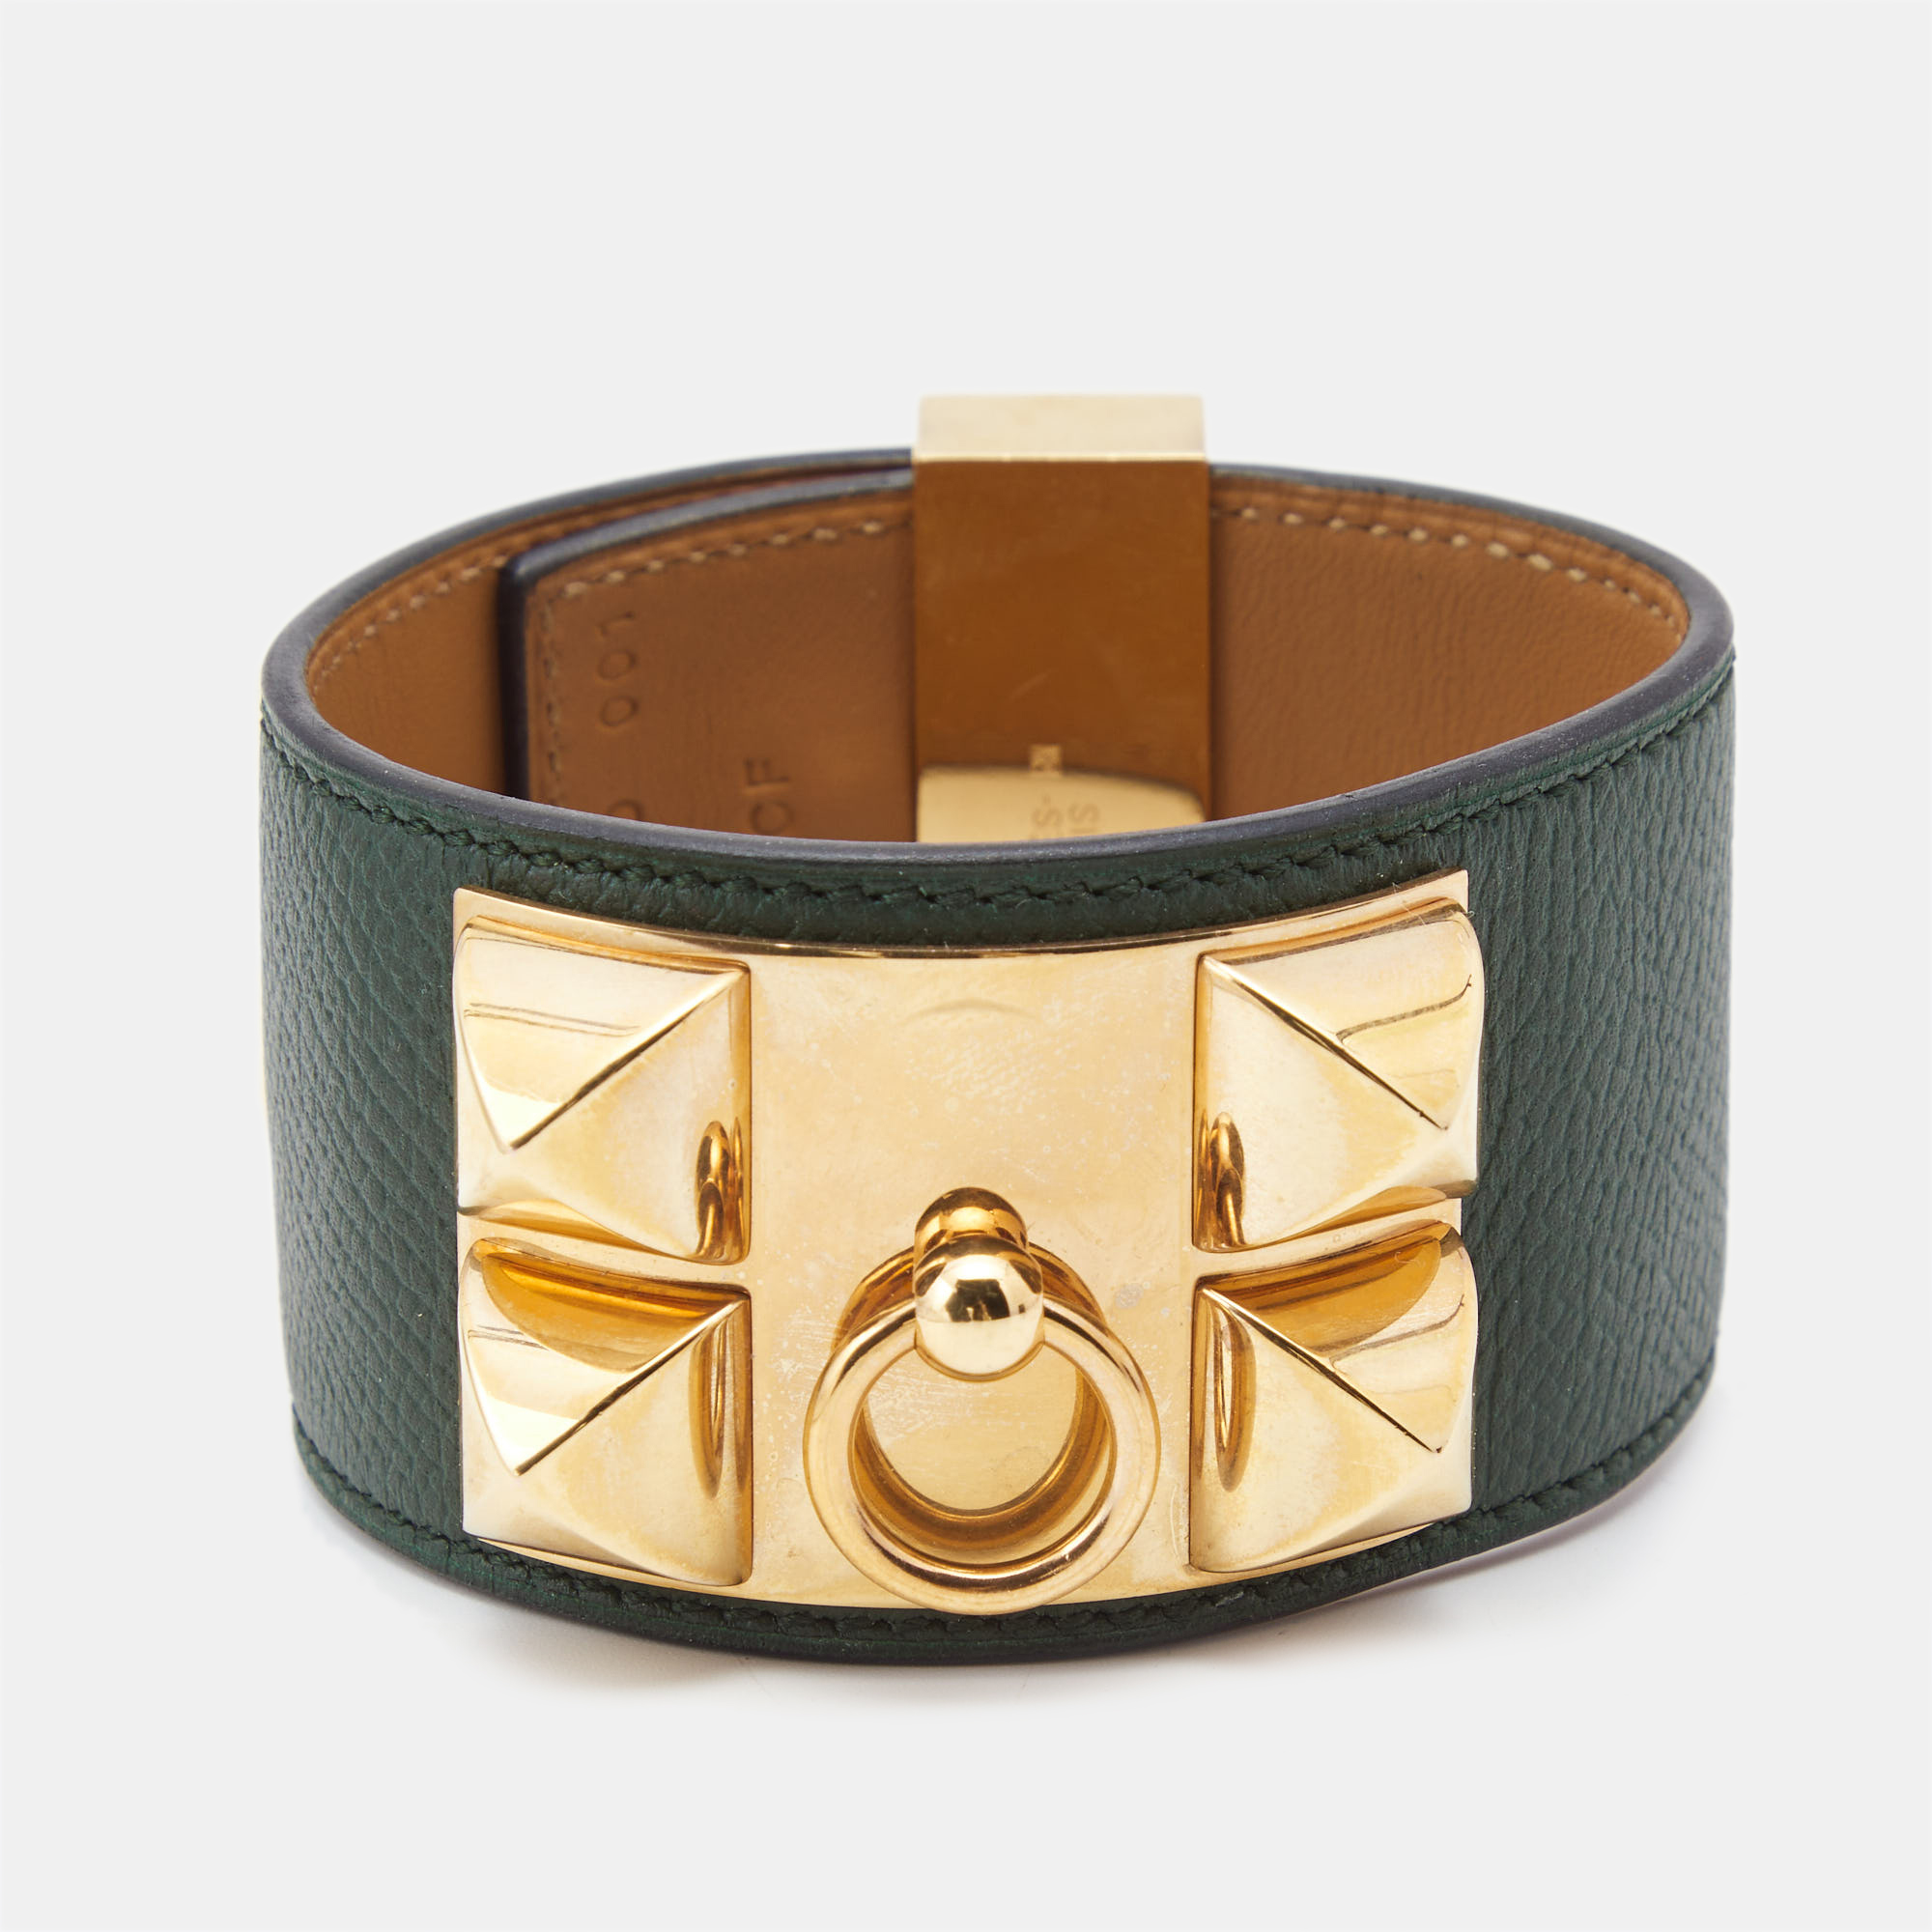 Hermes collier de chien leather gold plated bracelet l